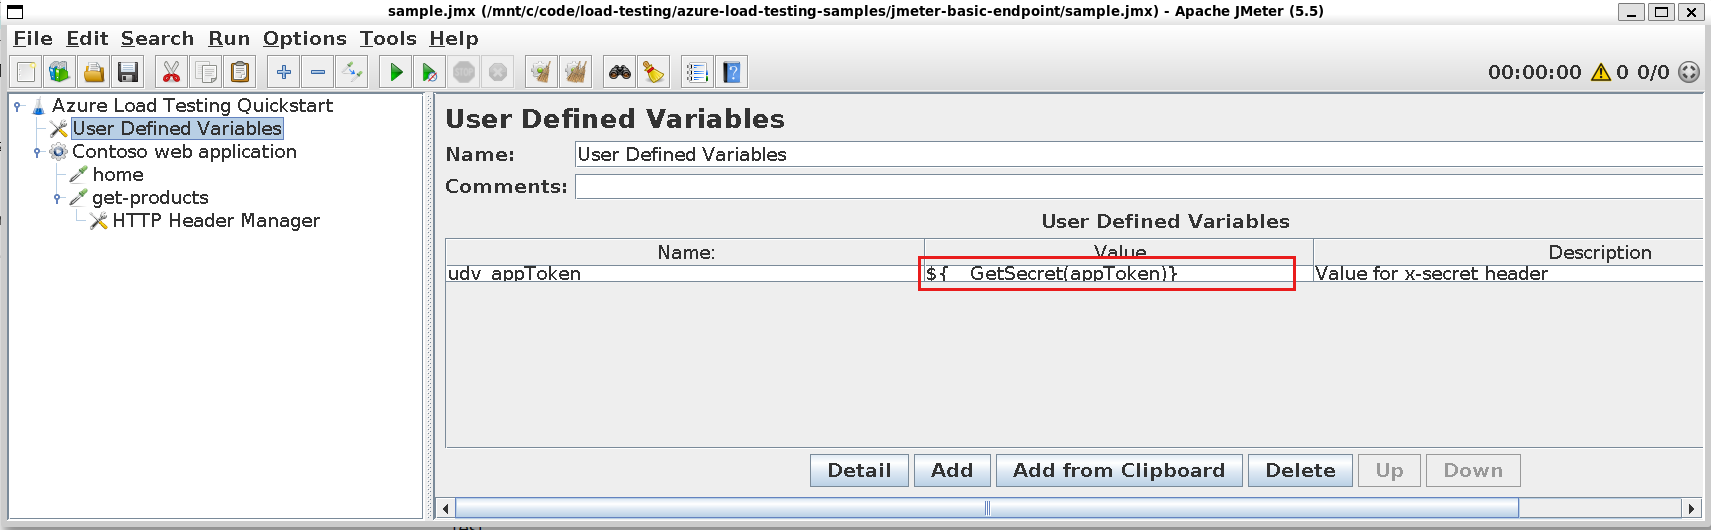 Capture d’écran montrant comment ajouter une variable définie par l’utilisateur qui utilise la fonction GetSecret dans JMeter.